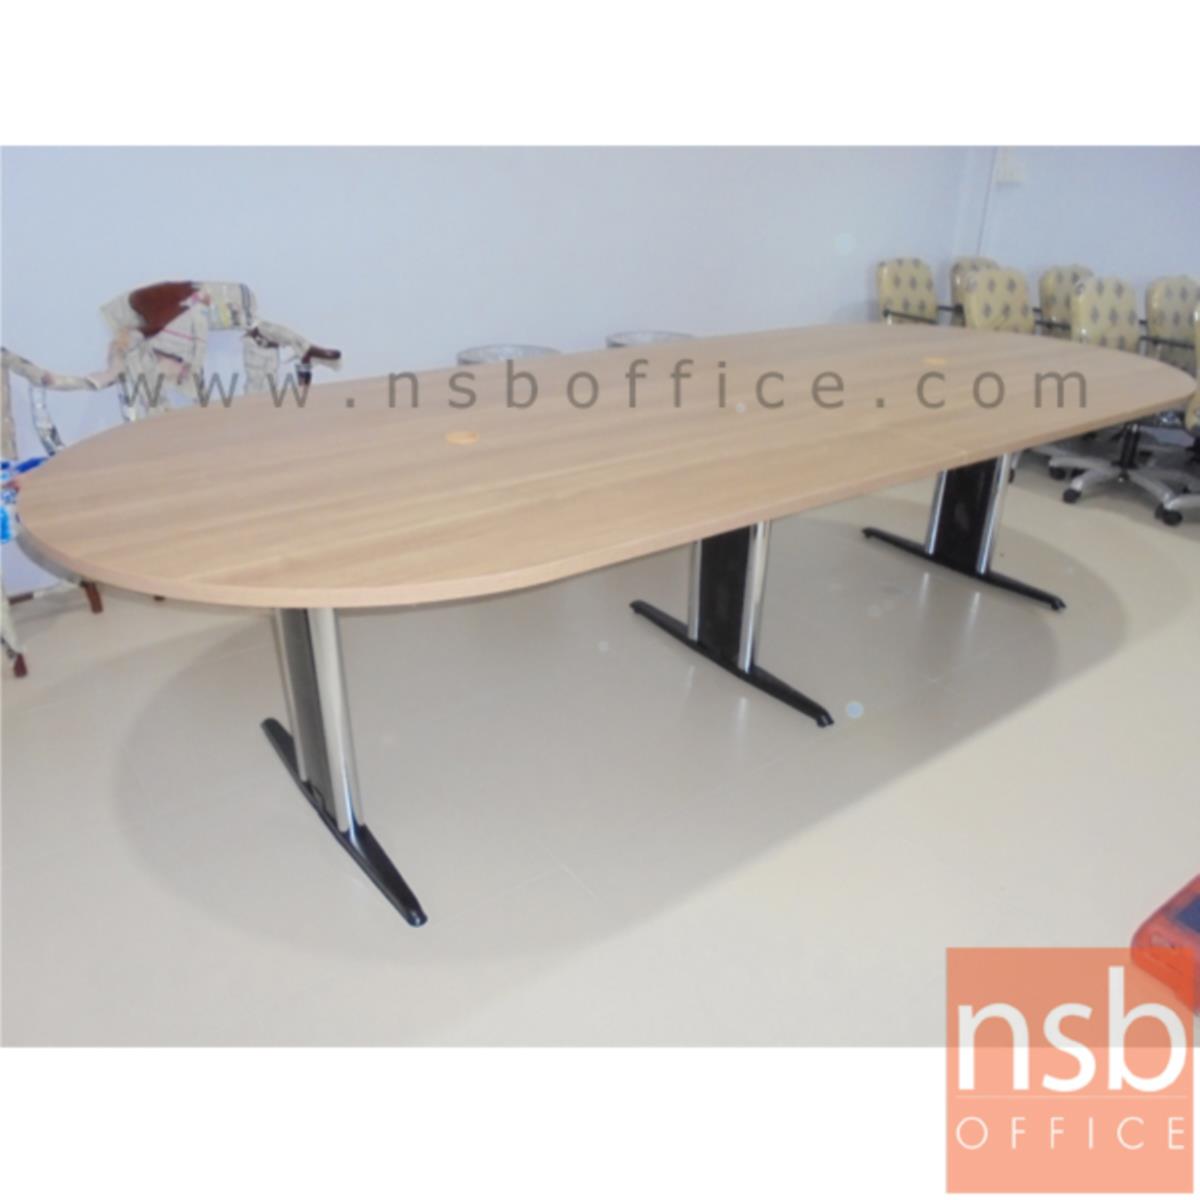 โต๊ะประชุมทรงแคปซูล  ขนาด 300W, 360W, 400W, 480W cm.  พร้อมระบบคานเหล็ก ขาเหล็กตัวไอ